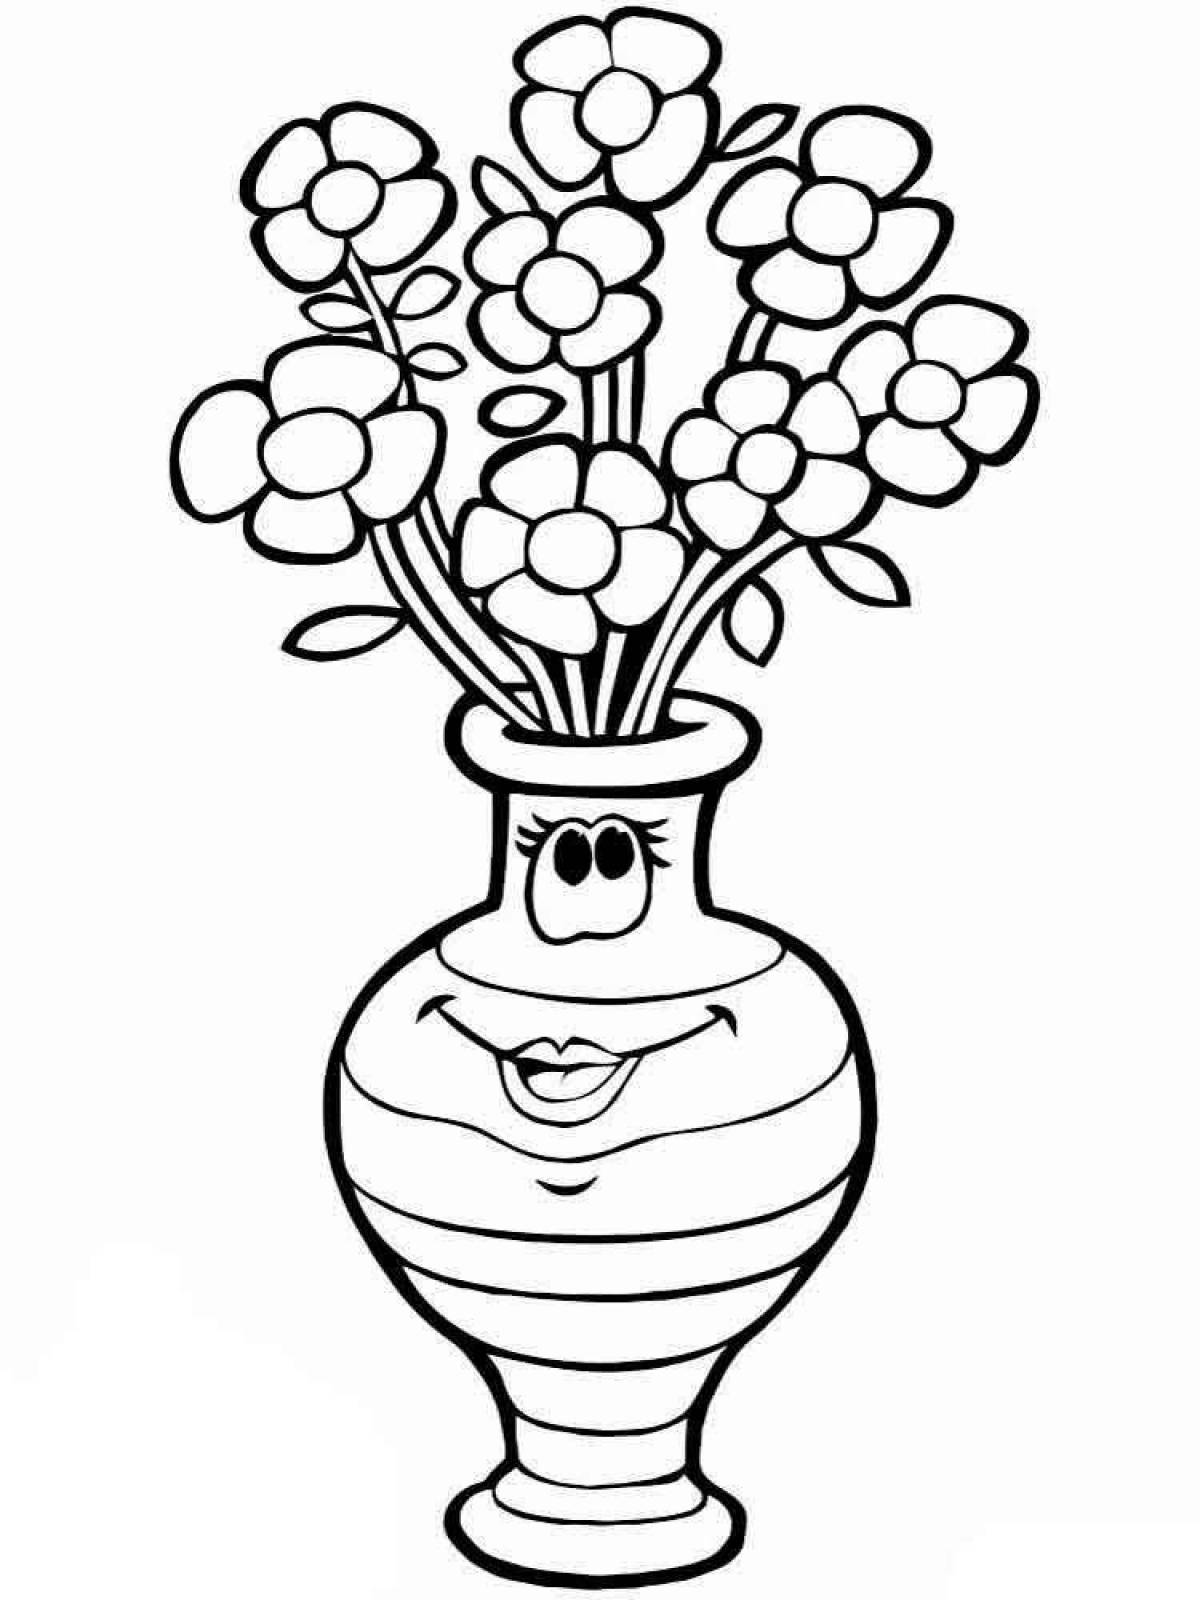 Цветочки рисунок в вазе - 52 фото